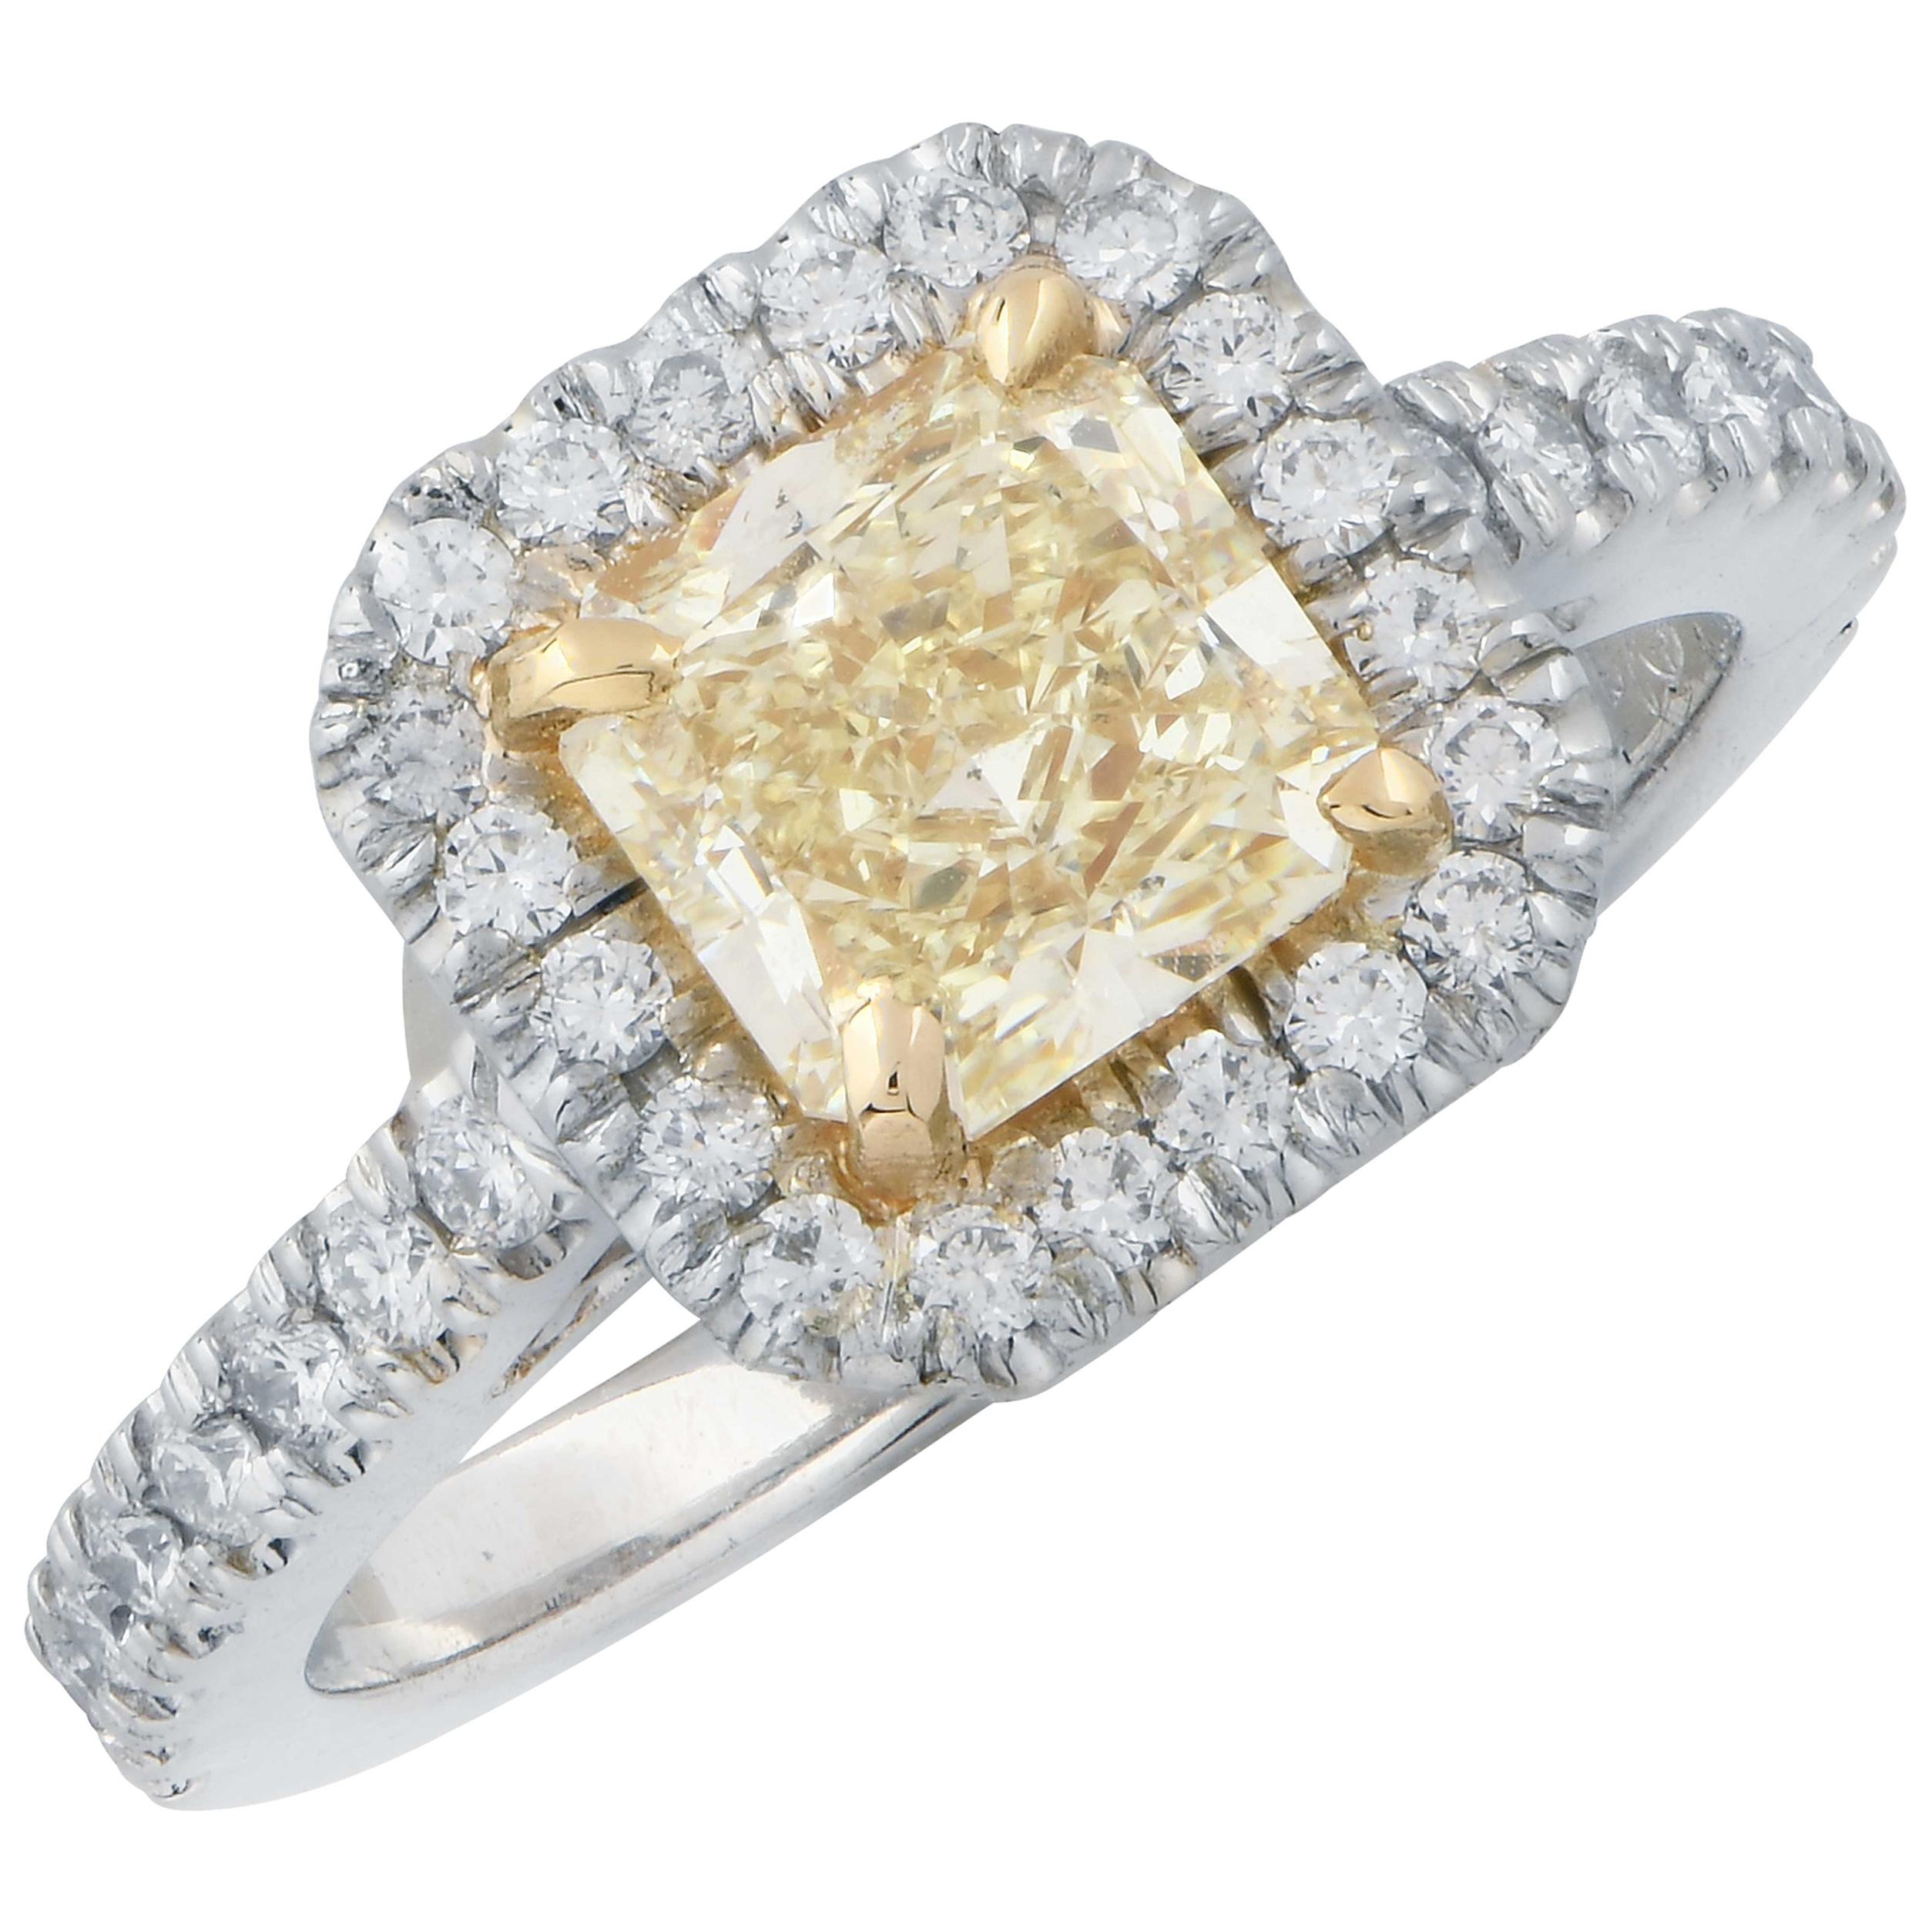 1.38 Carat Radiant Cut Yellow Diamond in Platinum Engagement Ring